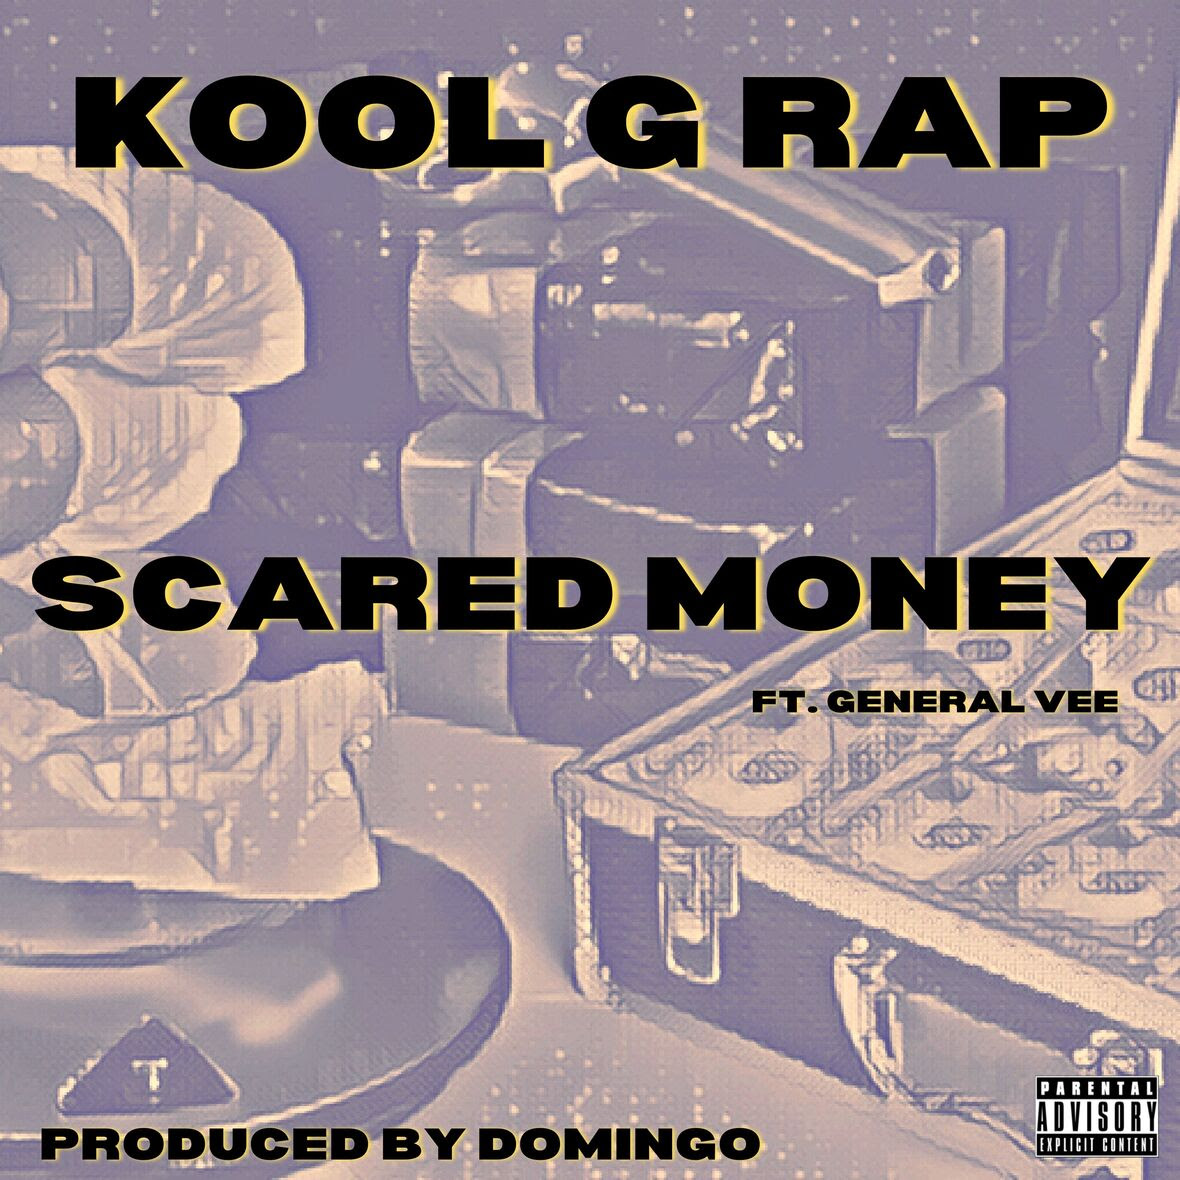 Scared_money_kool_g_rap